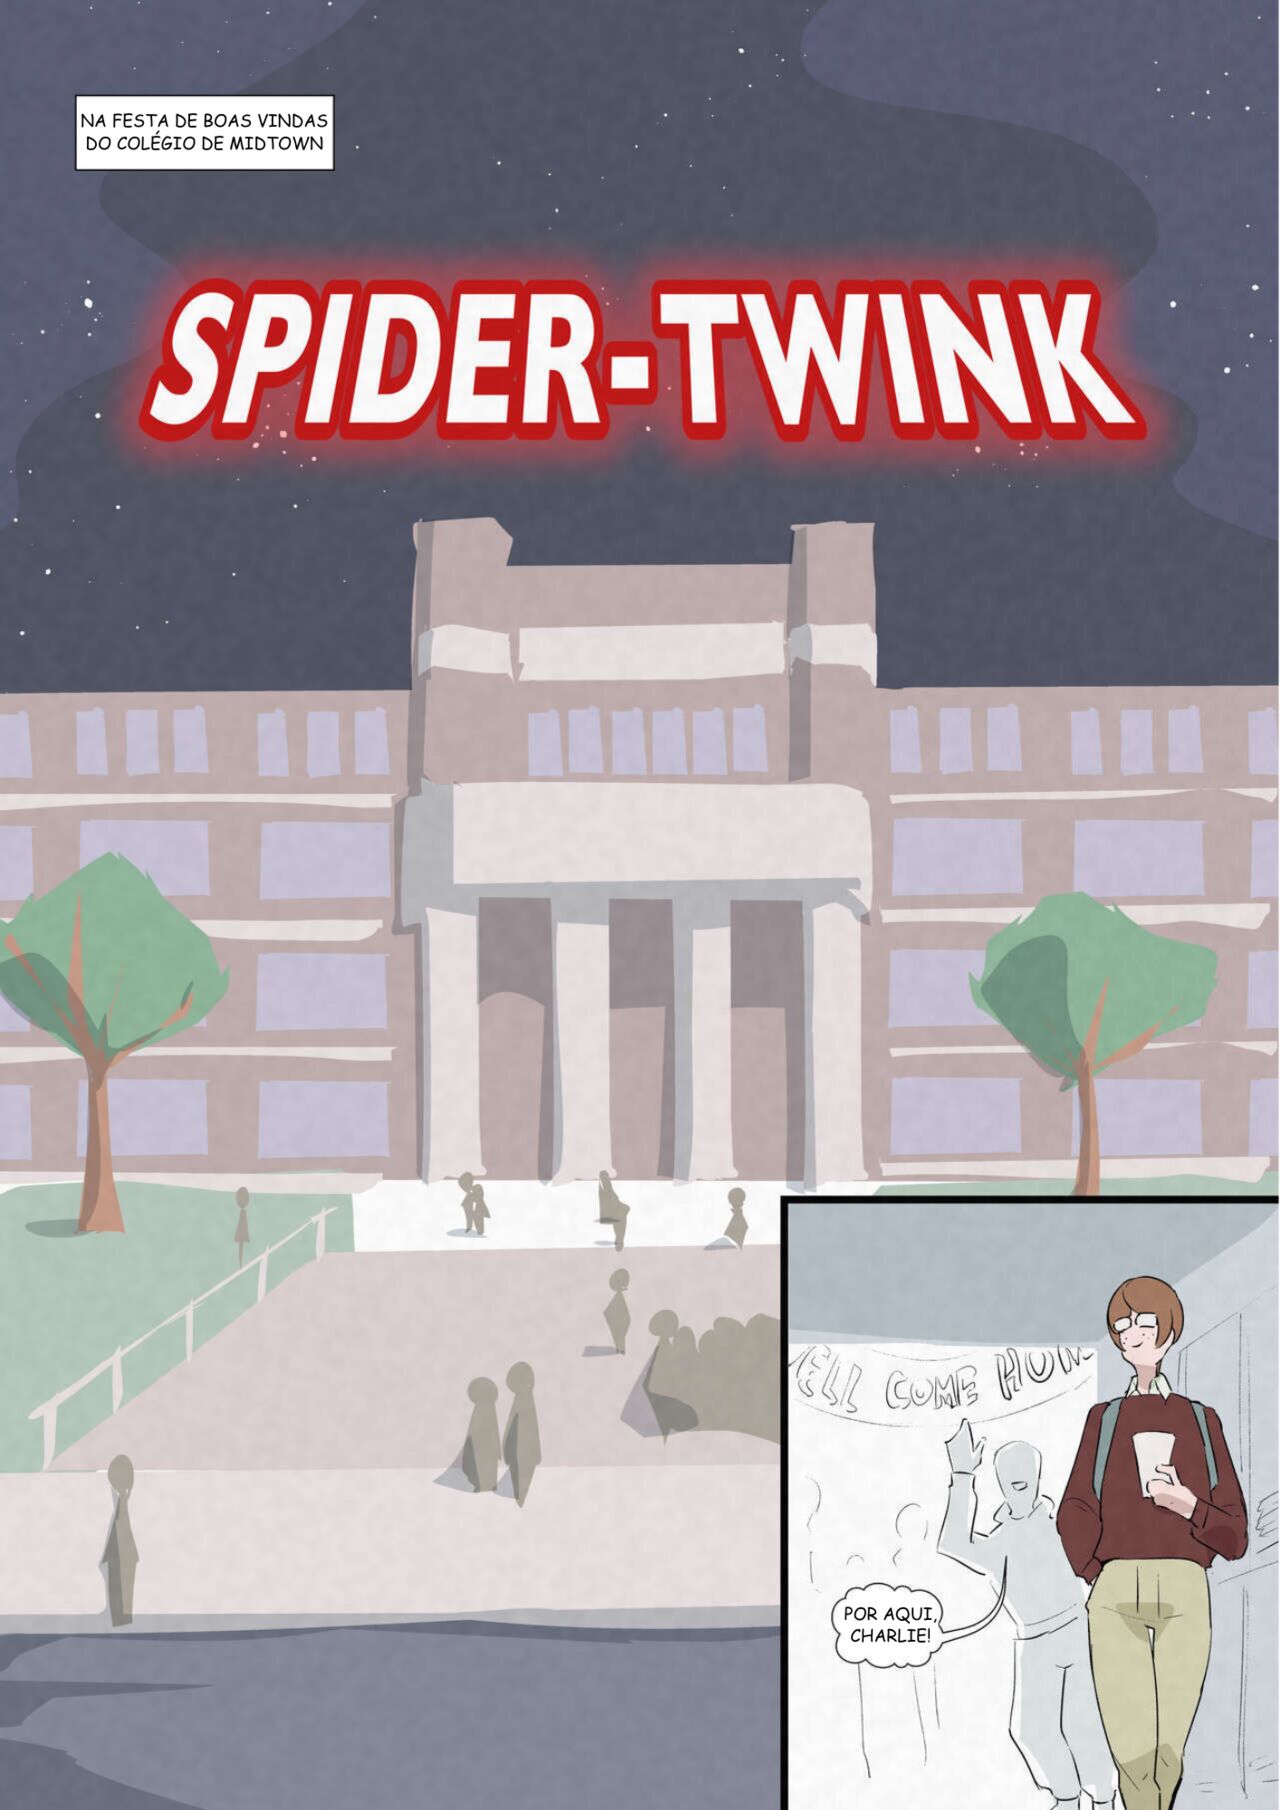 Spider-Twink 이미지 번호 1